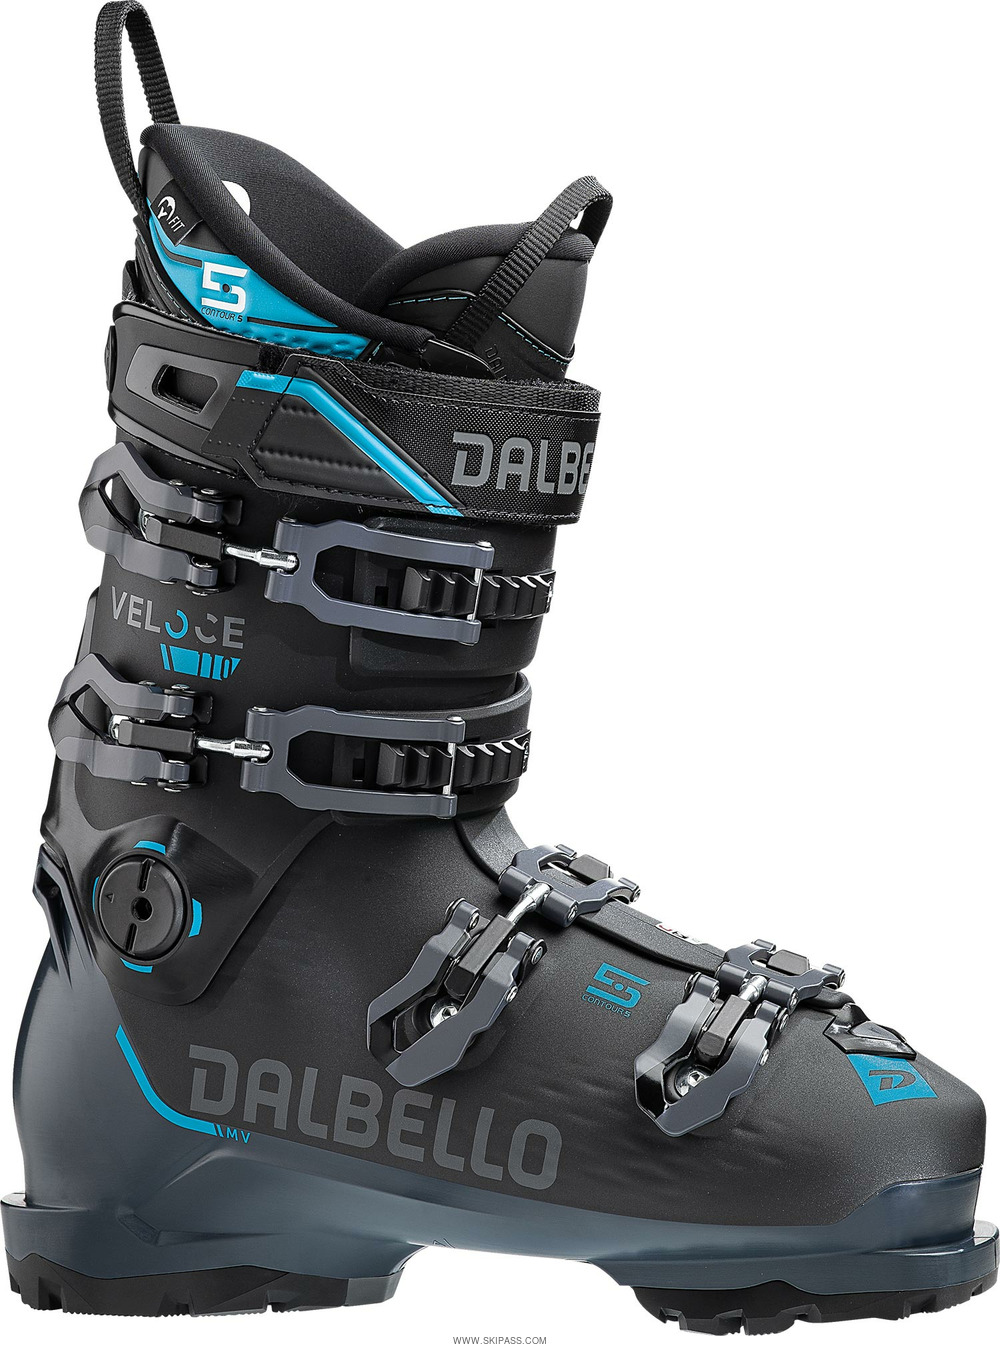 Dalbello Veloce 110 gw black/grey blue